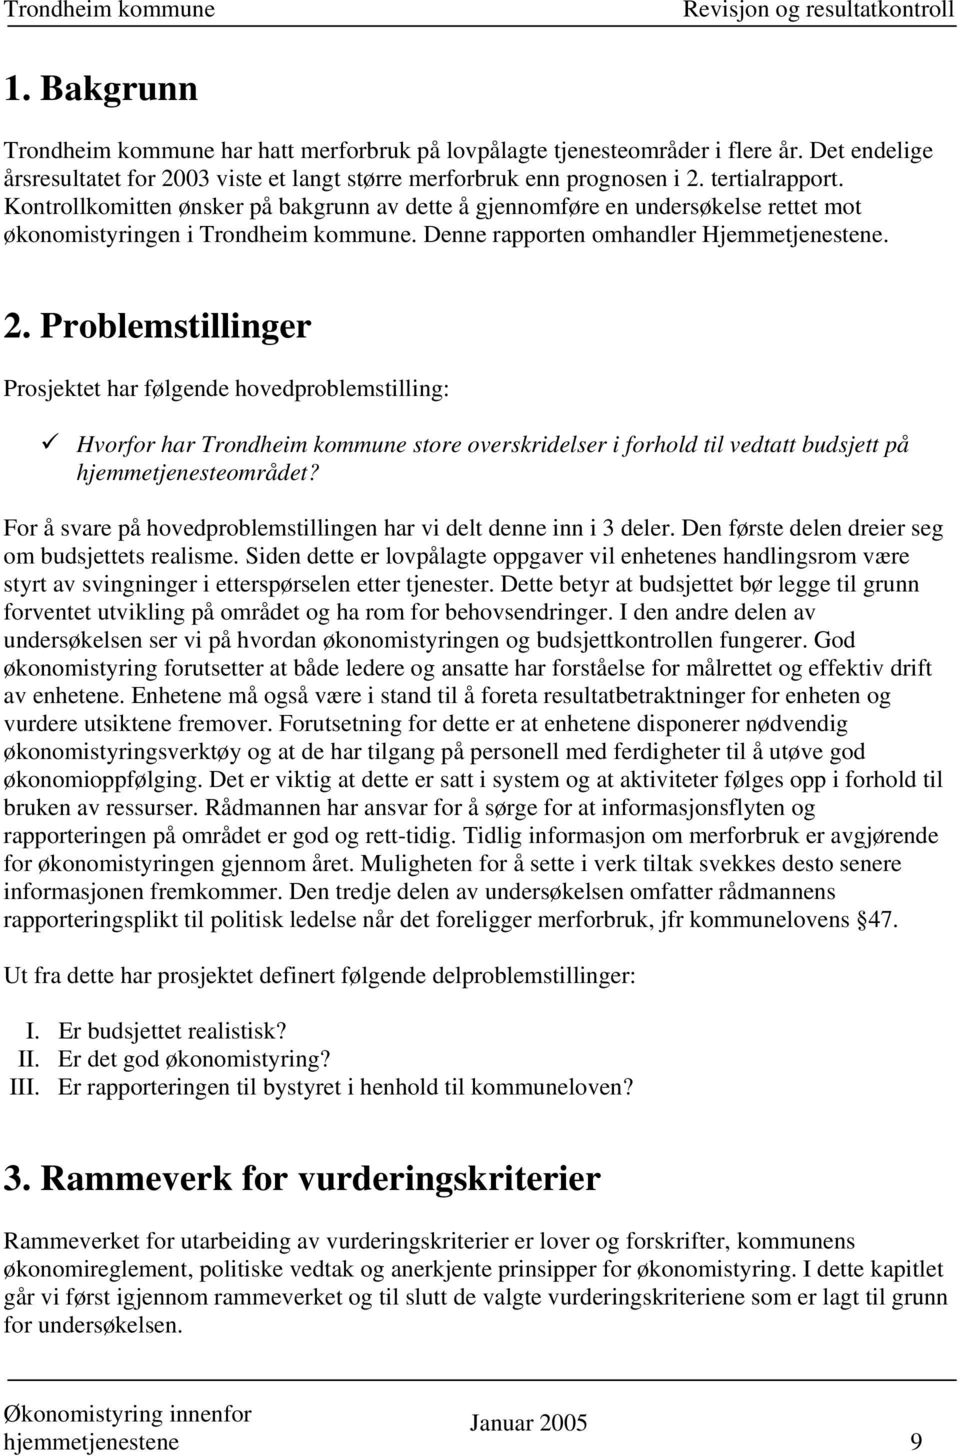 Problemstillinger Prosjektet har følgende hovedproblemstilling: Hvorfor har Trondheim kommune store overskridelser i forhold til vedtatt budsjett på hjemmetjenesteområdet?